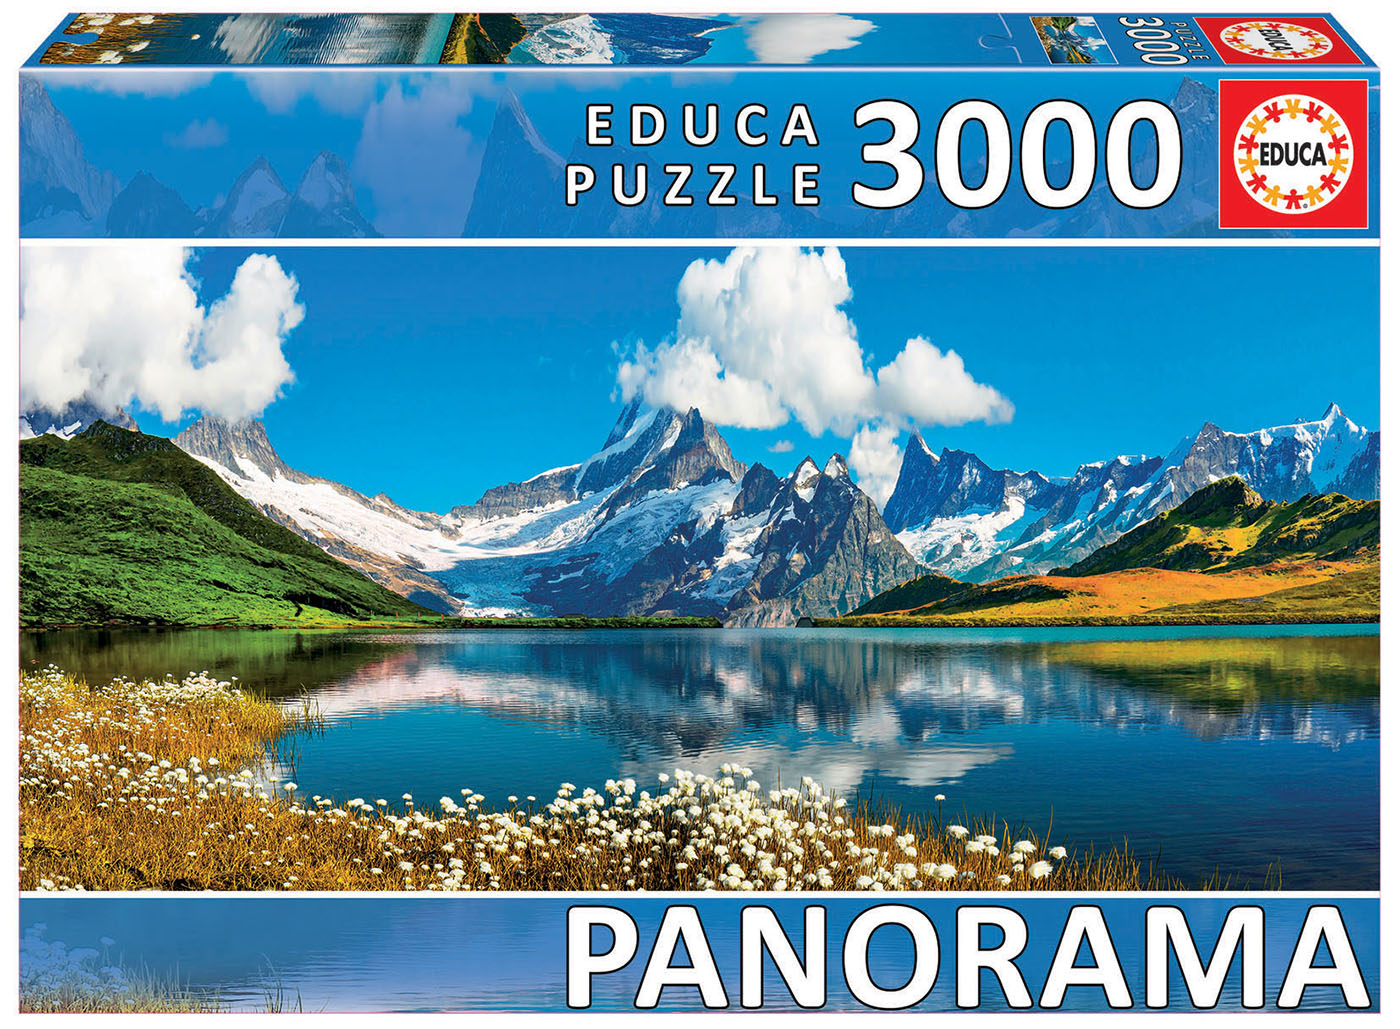 NEW EDUCA Jigsaw Puzzle 3000 Tiles Pieces Panorama “Mount Fuji..,,Japan" 